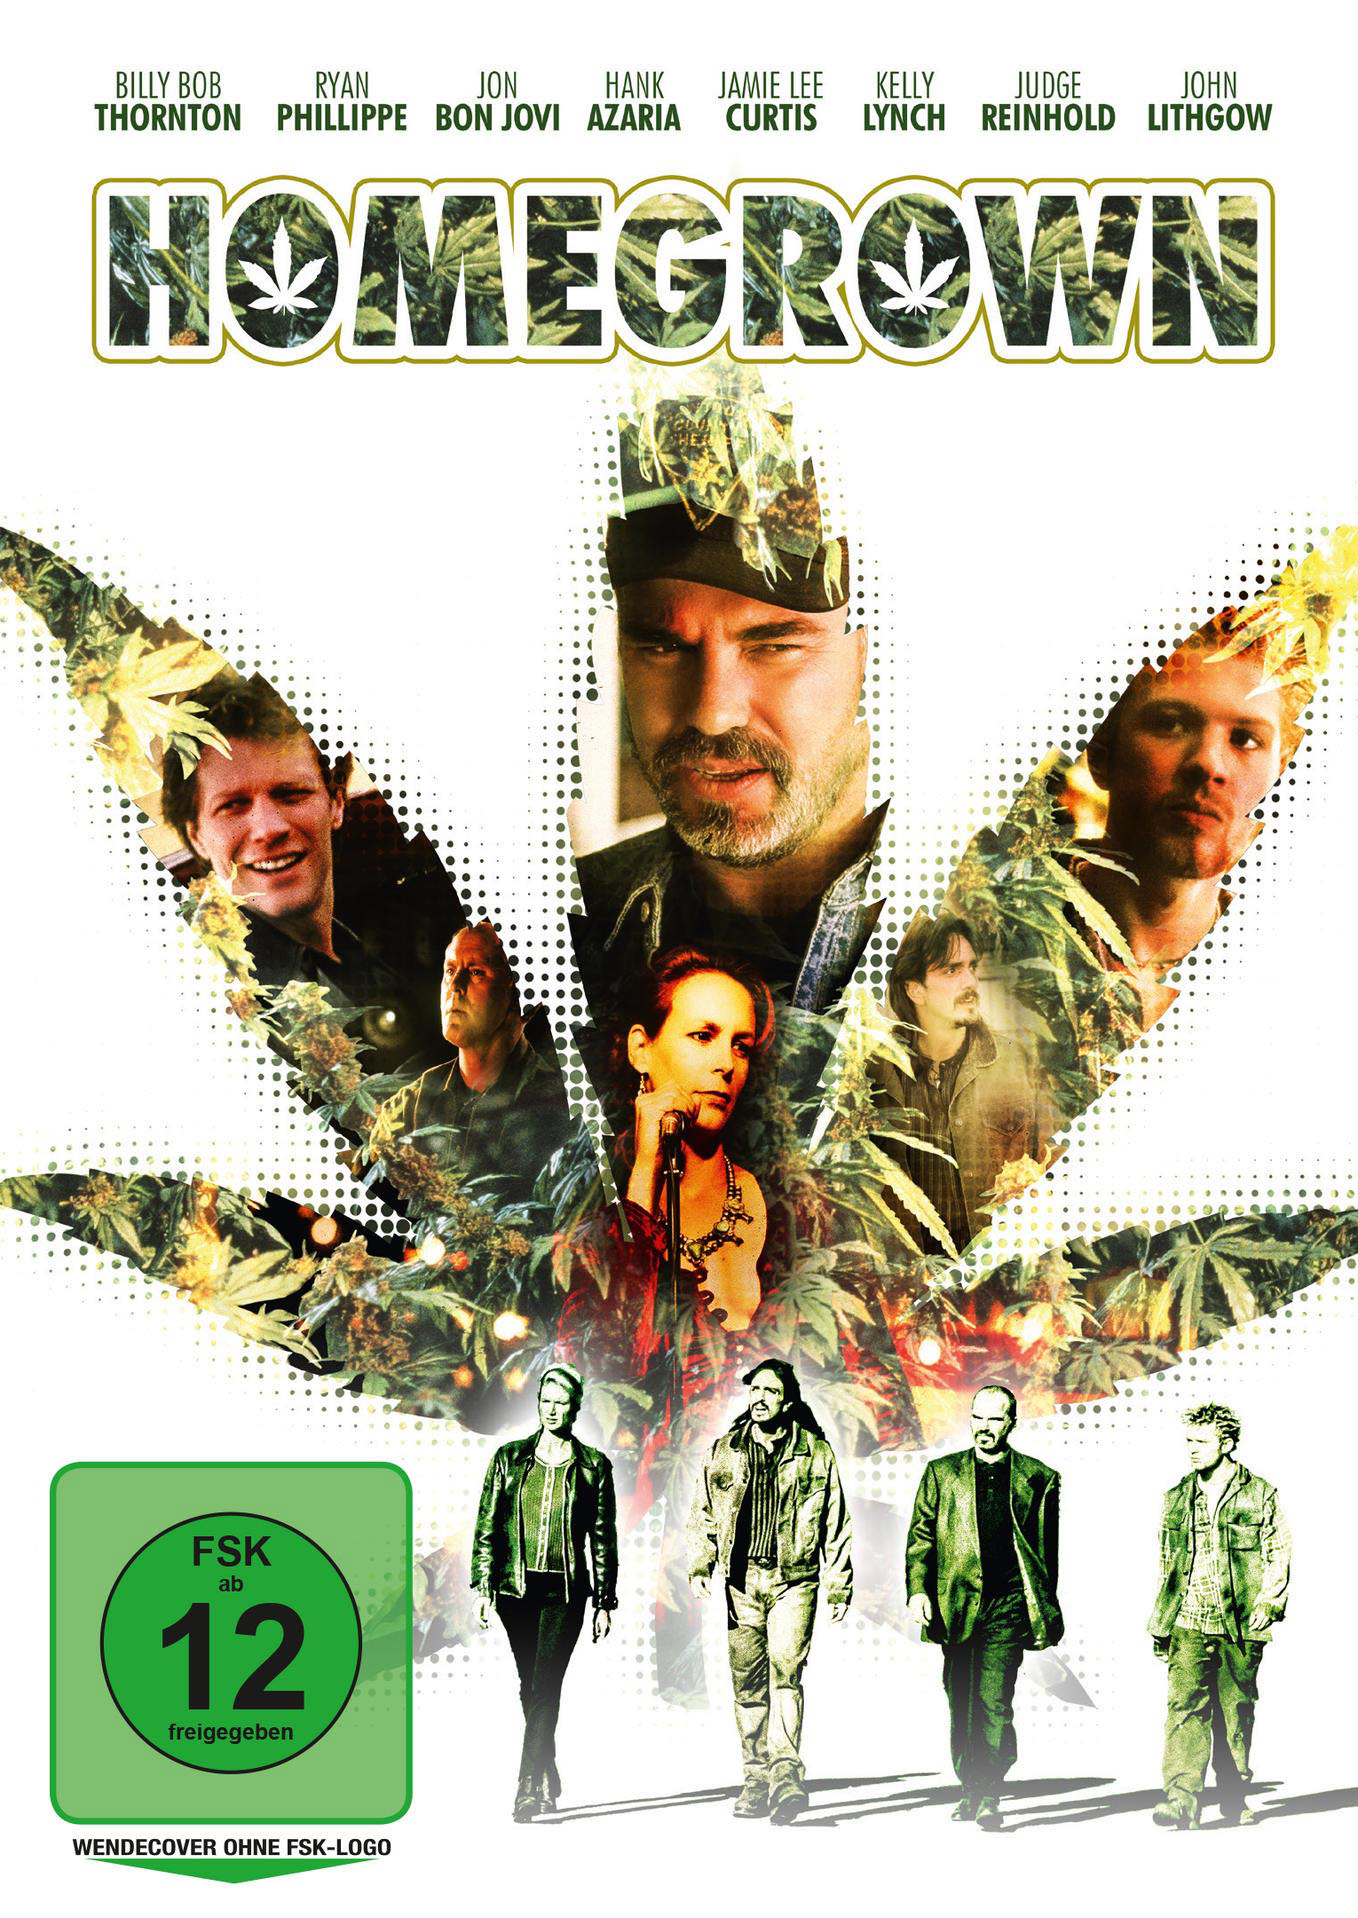 Homegrown DVD